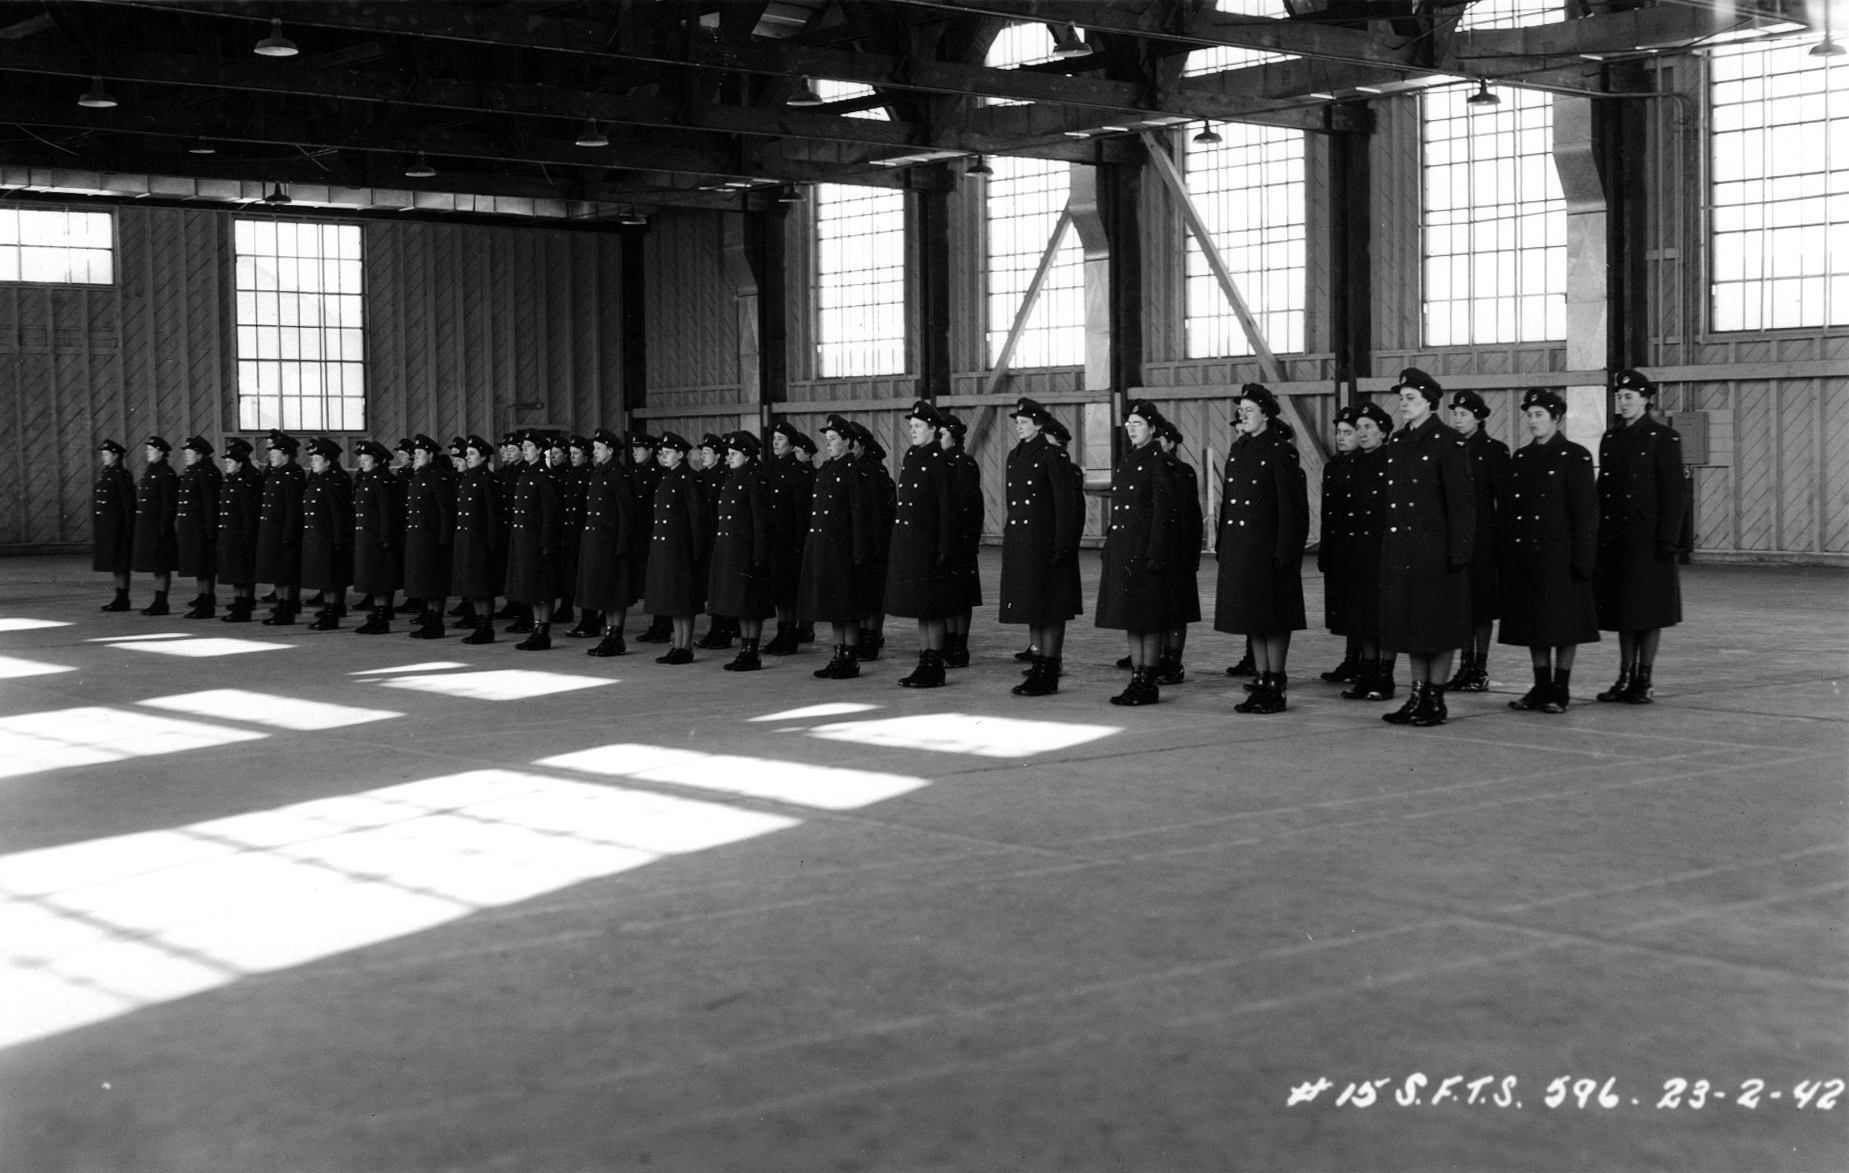 60 membres féminins de la Force aérienne au garde-à-vous dans un hangar à avions